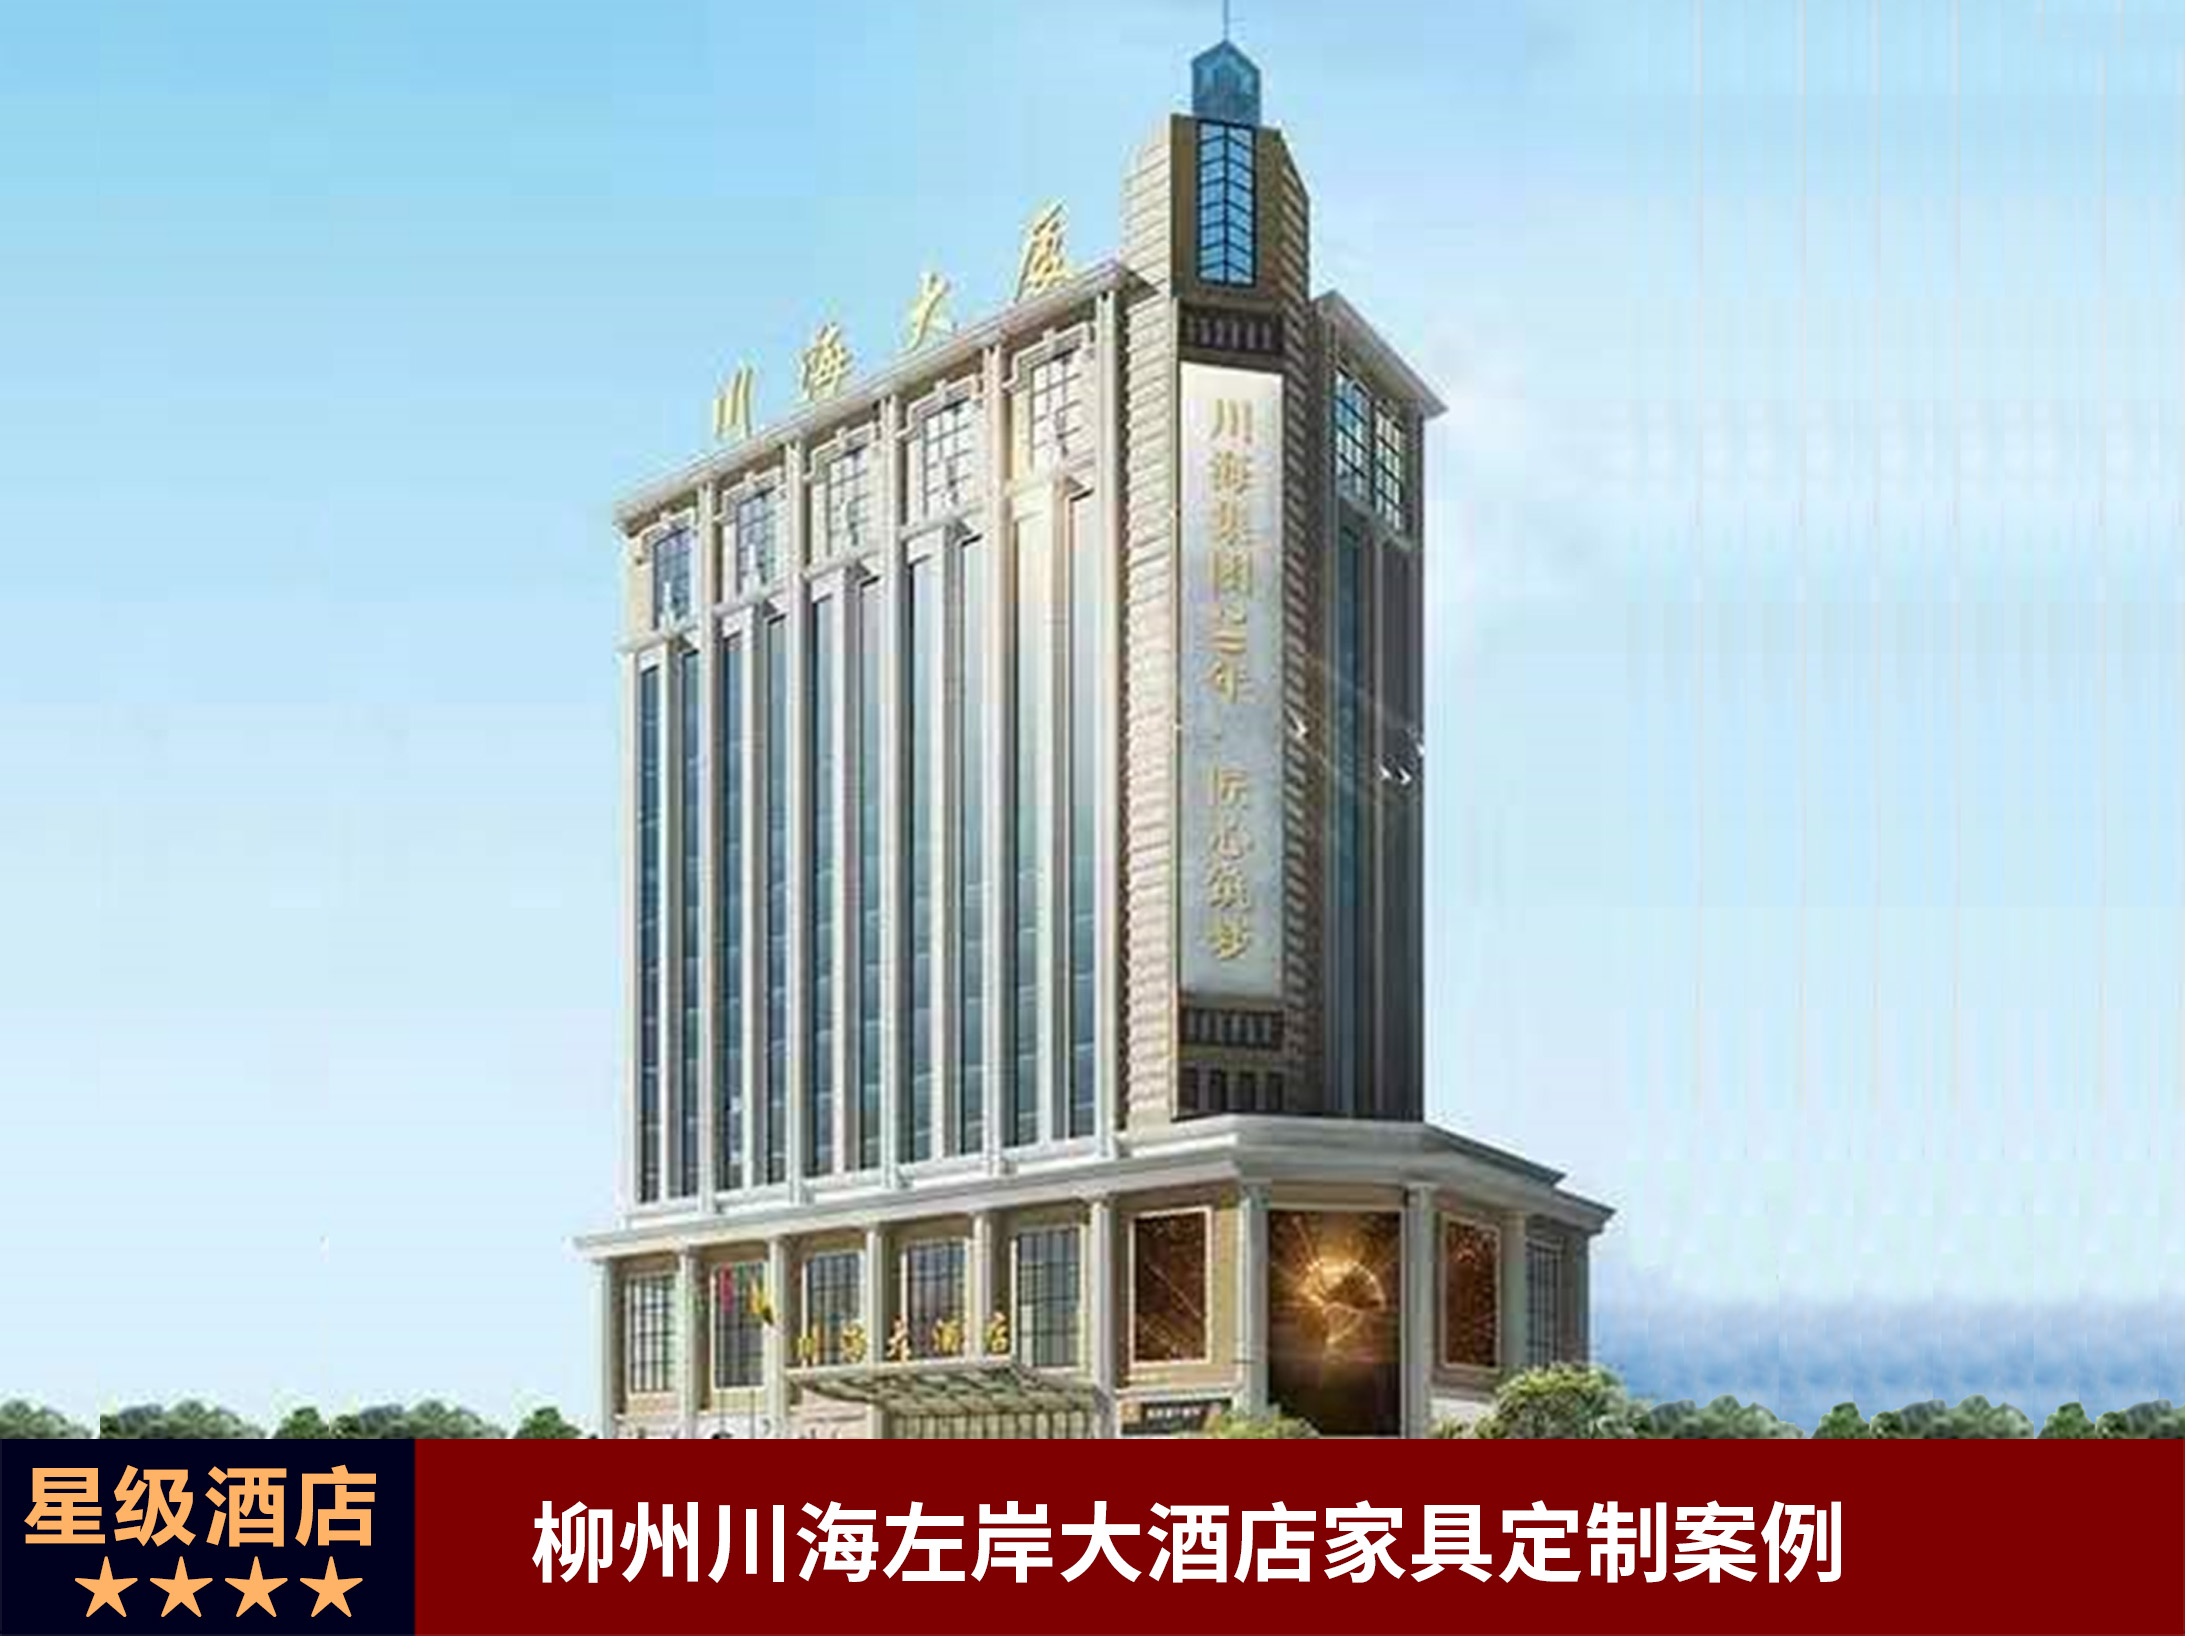 川海控股星级缔造——柳州川海左岸大酒店